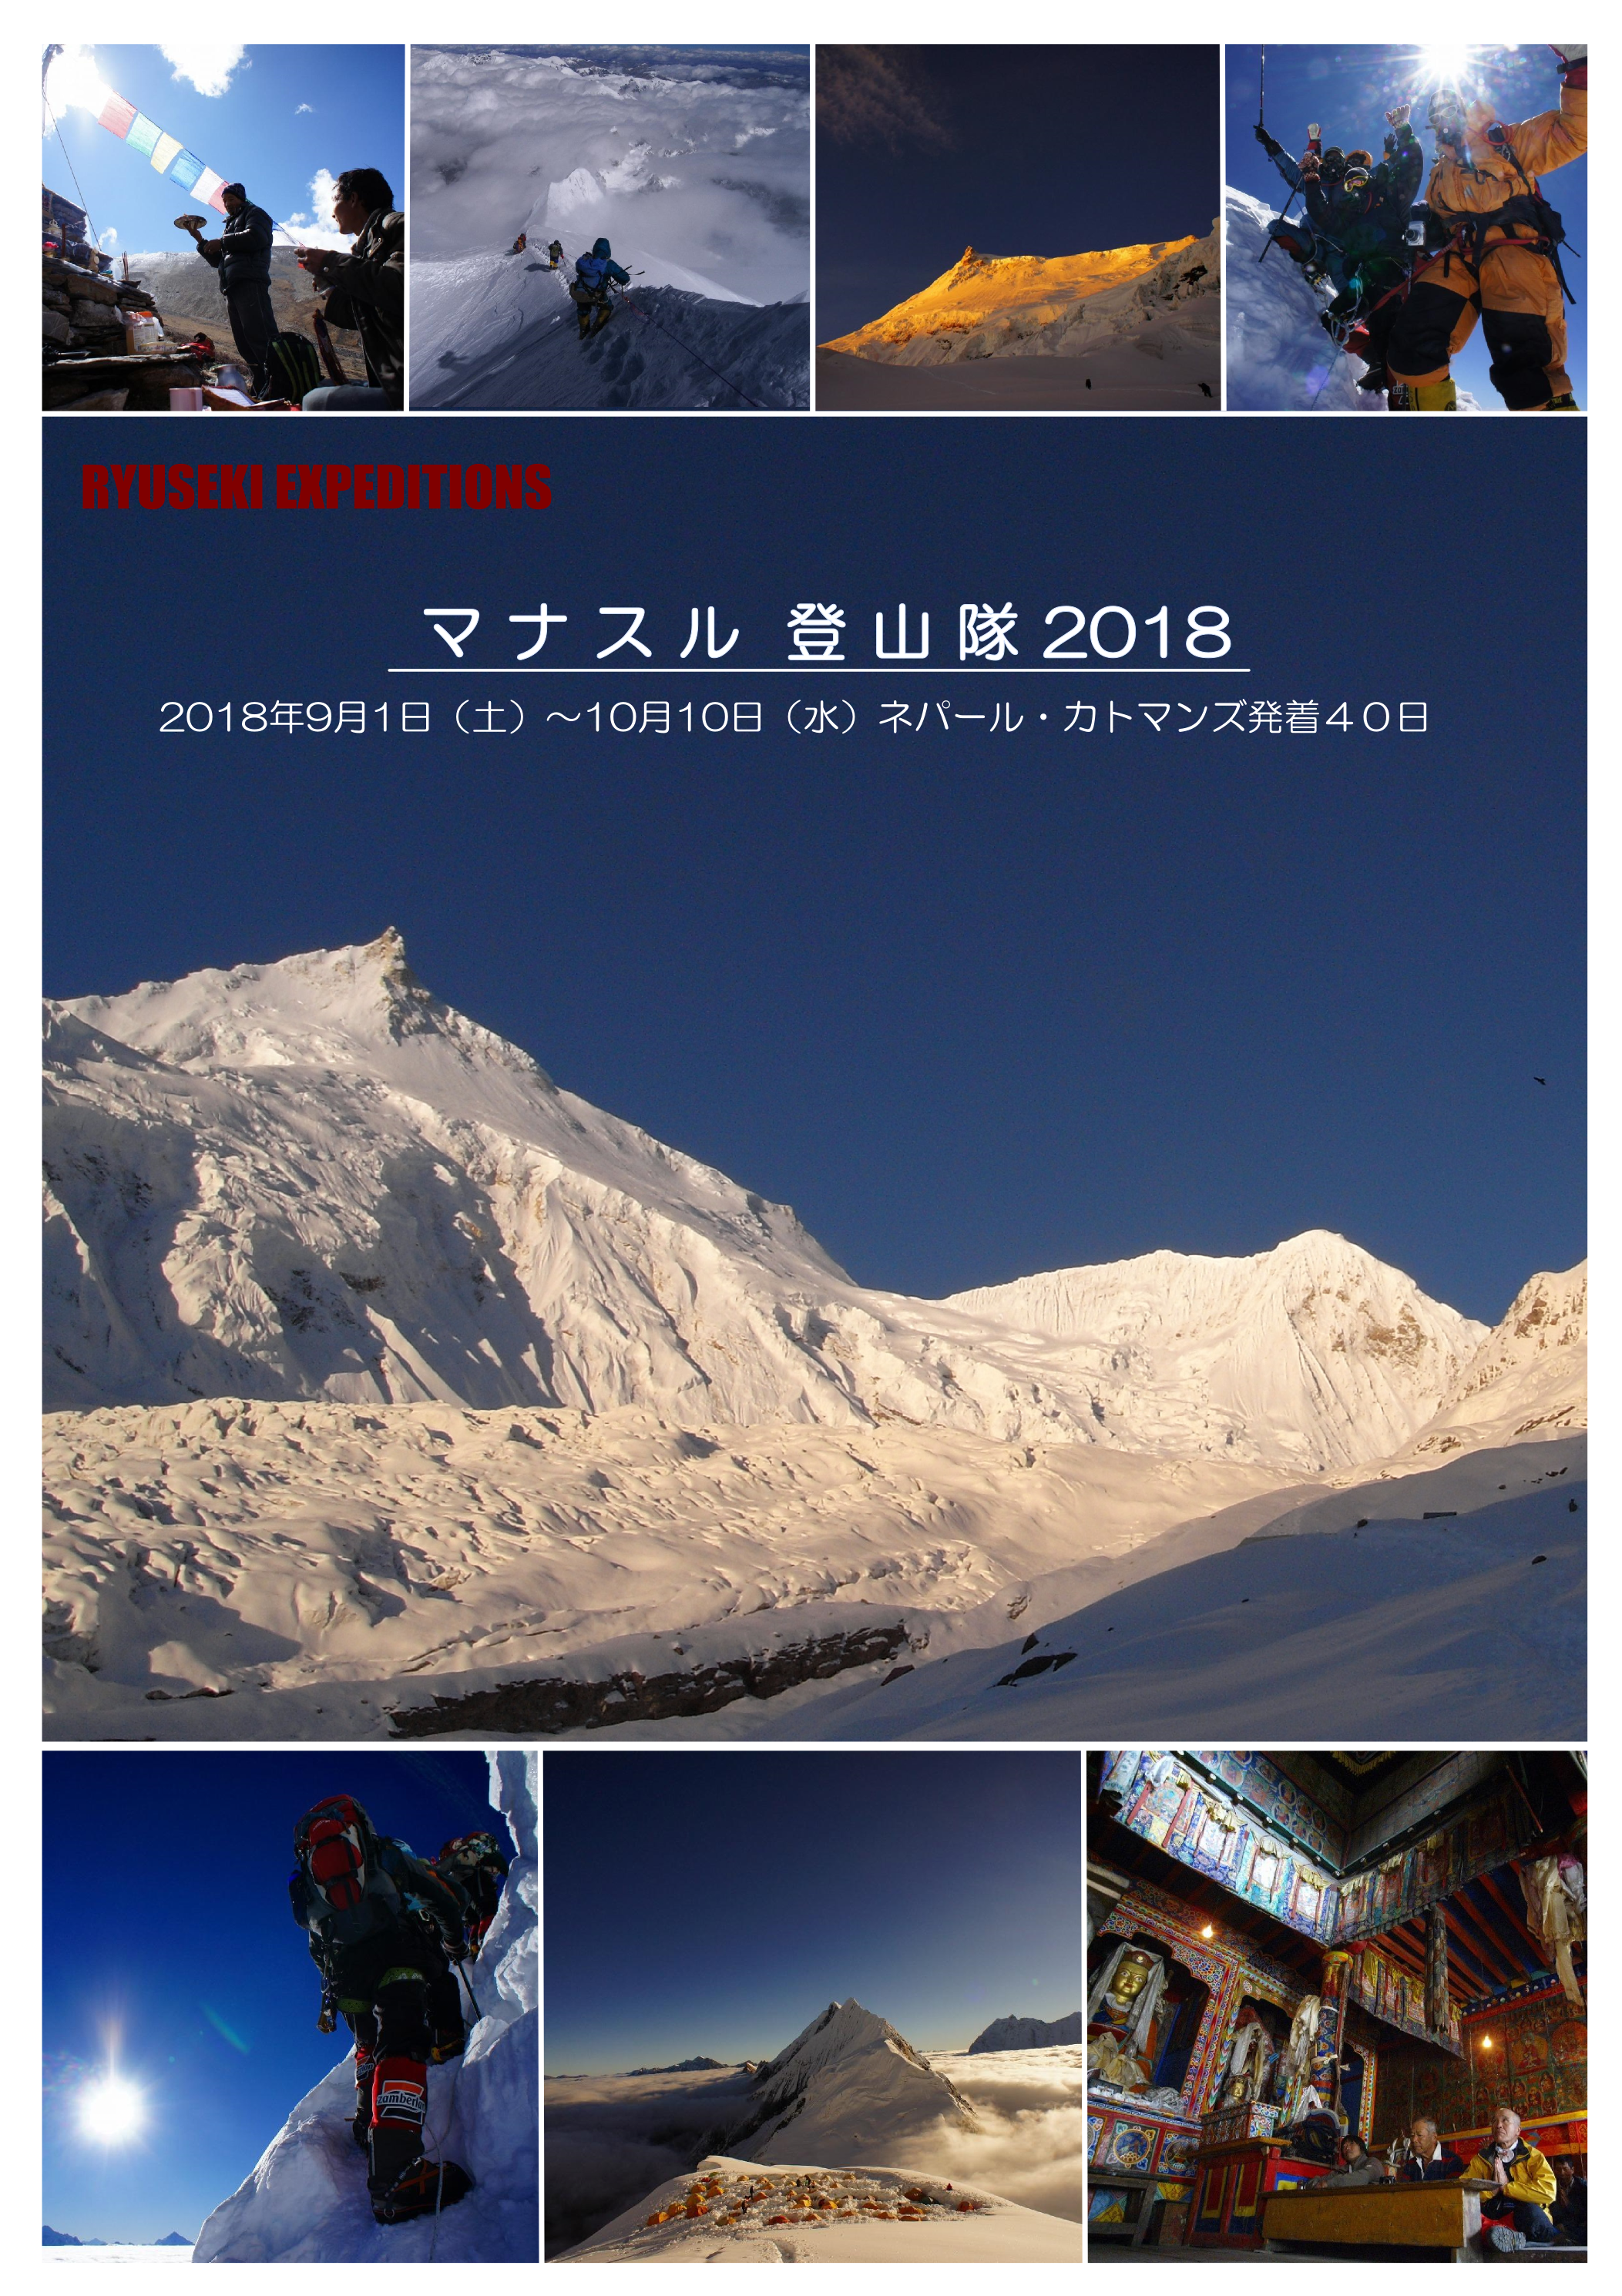 マナスル登山隊2018 8163m